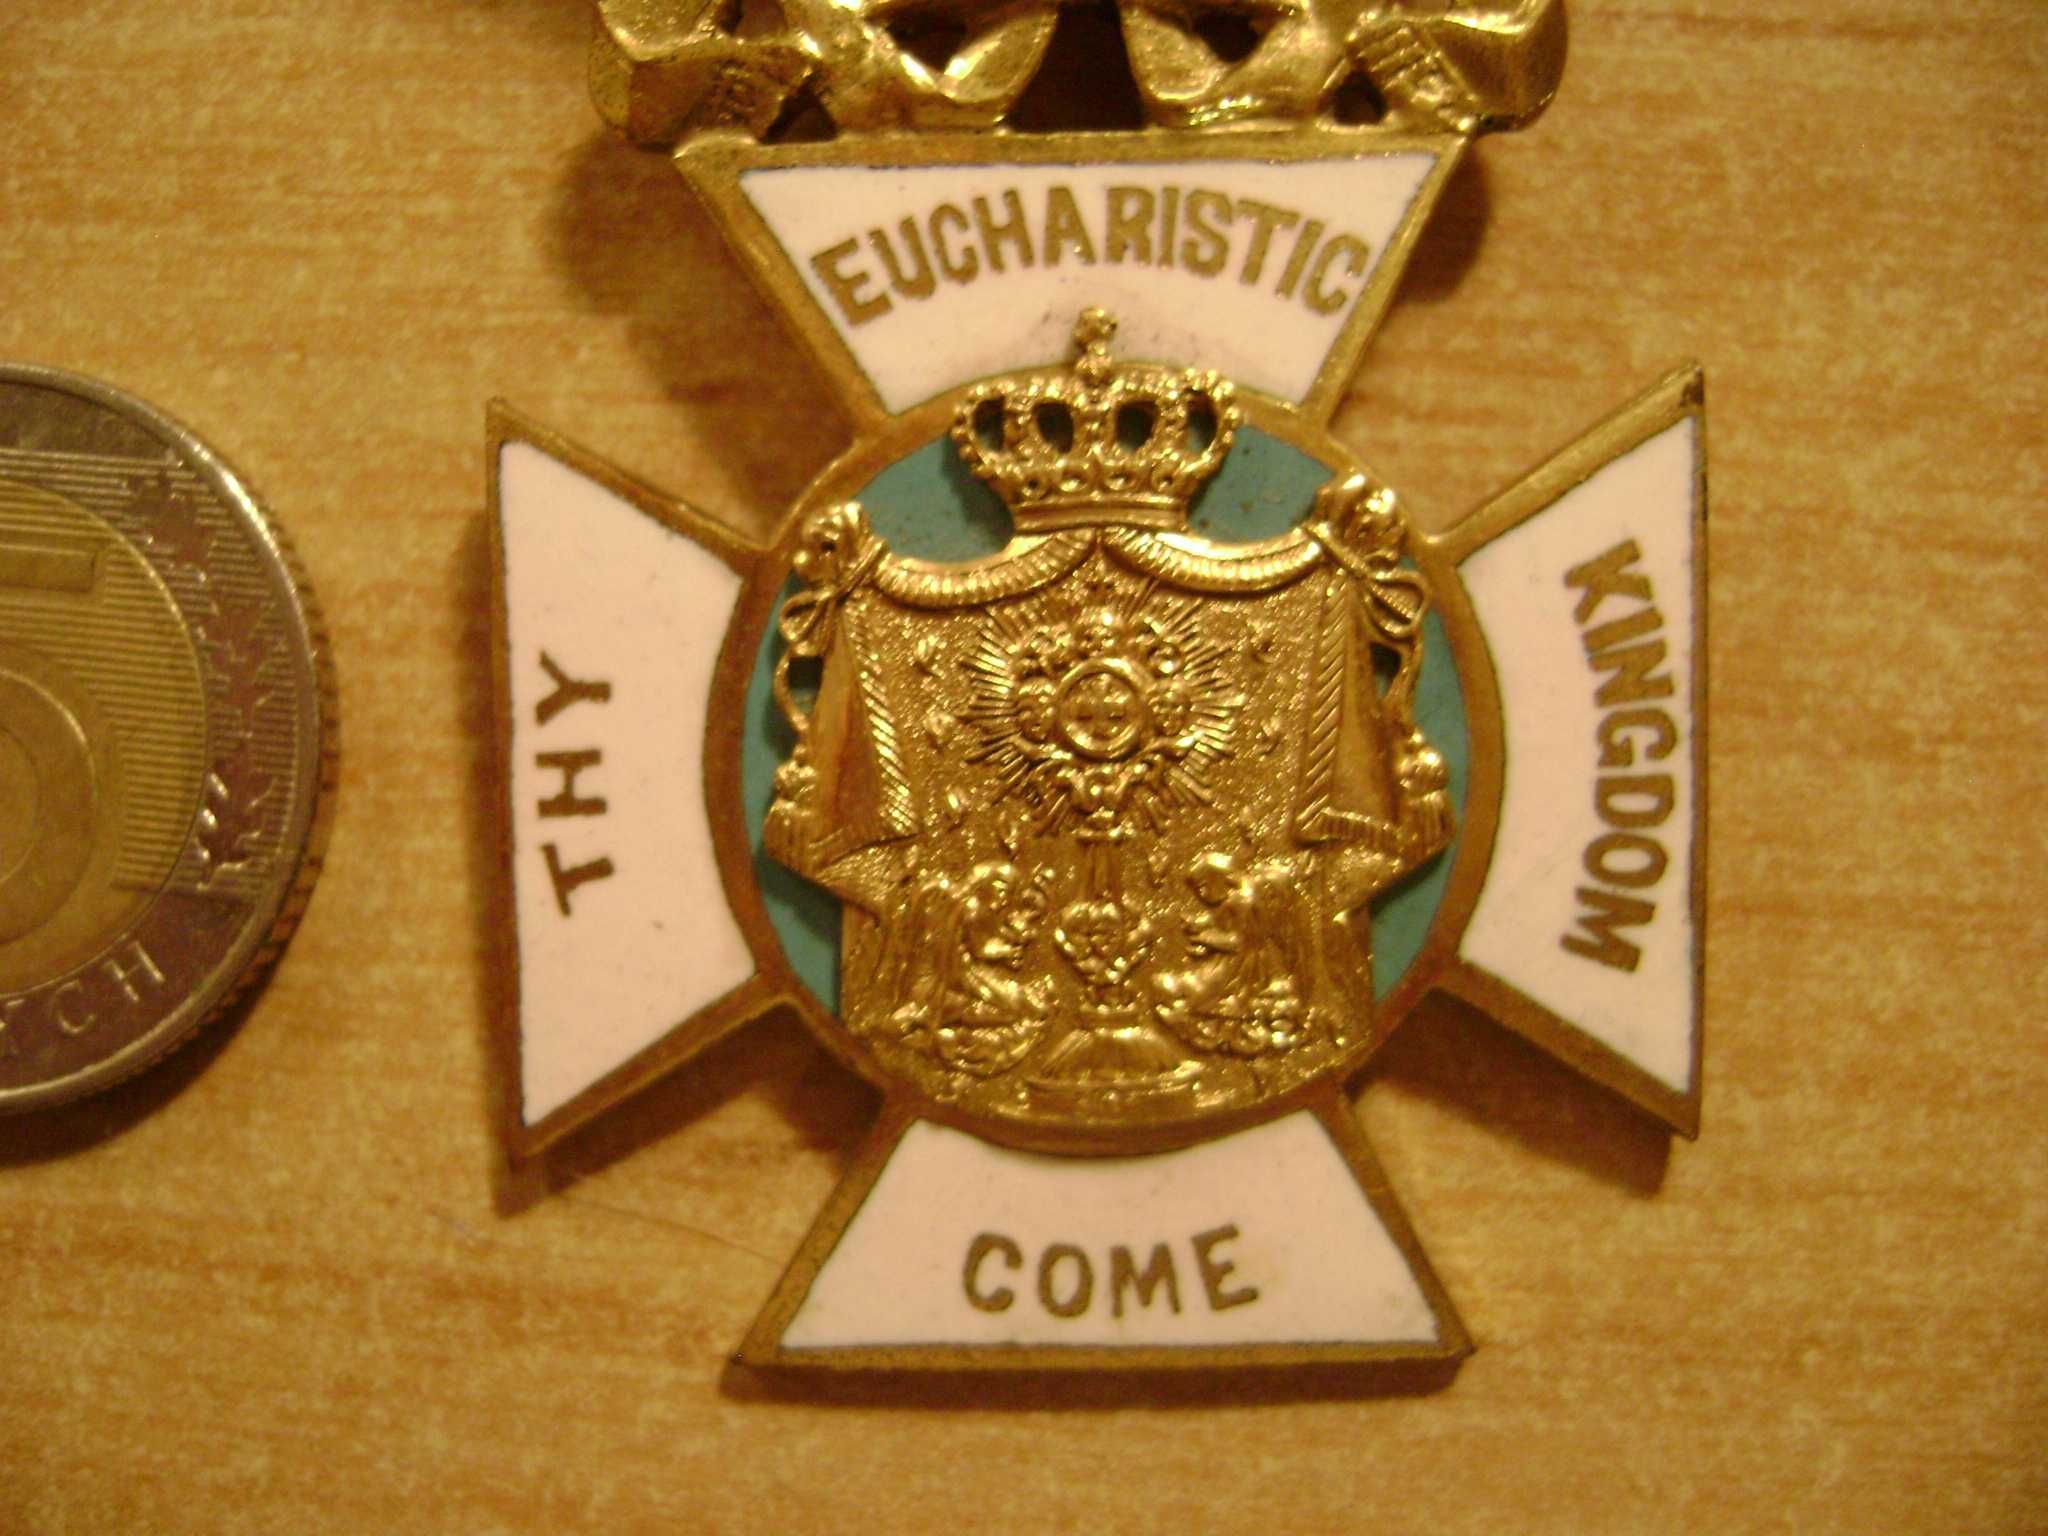 Starocie z PRL Militaria = Medal ze wstążką długą do rozpoznania